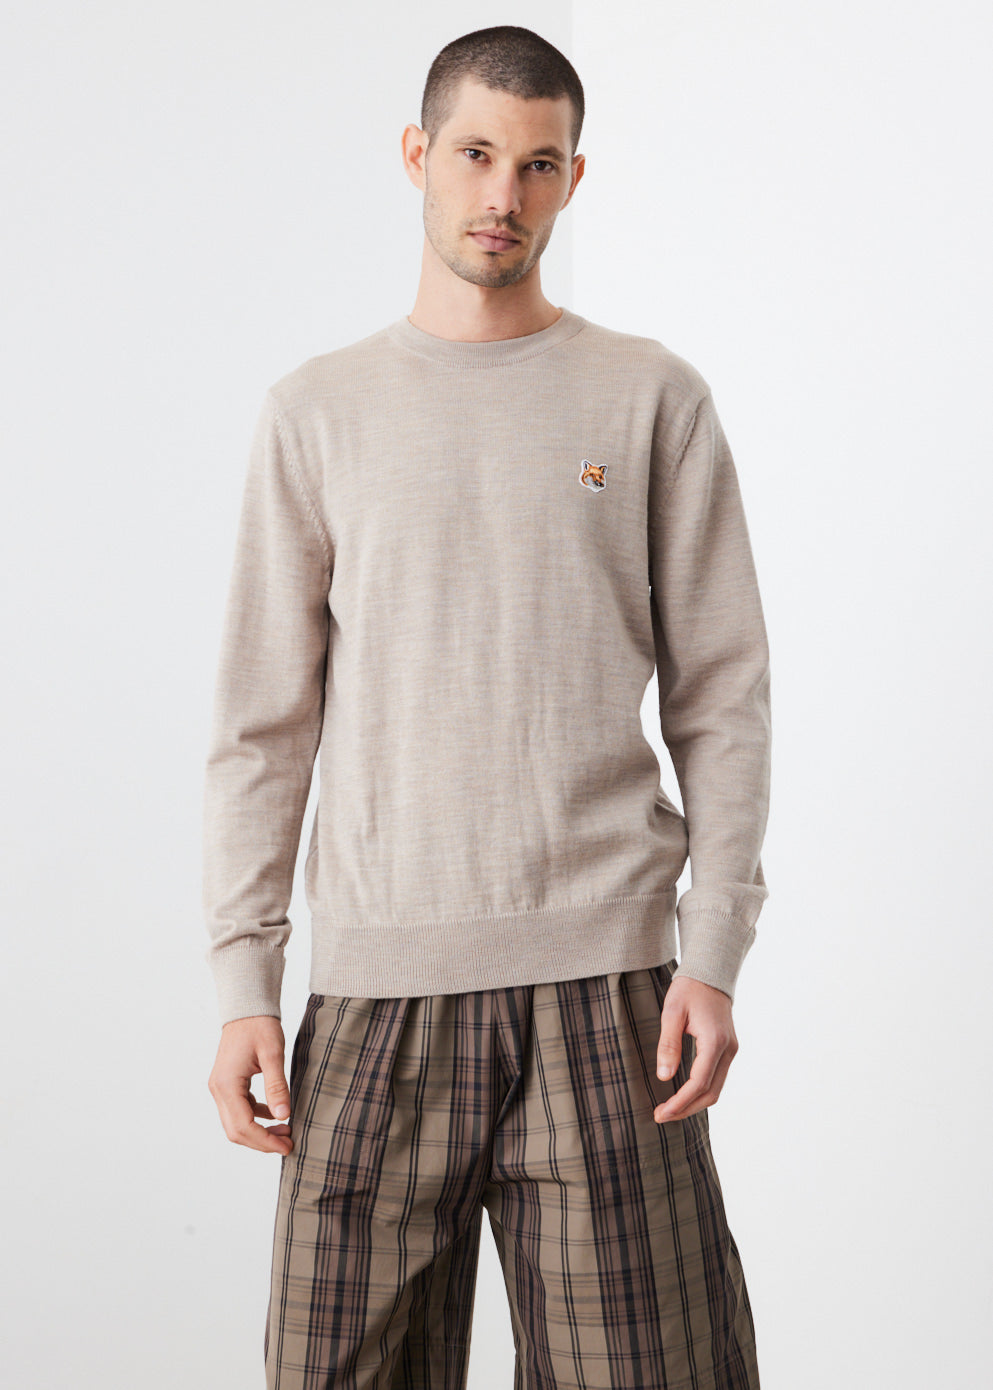 Fox Head Merino Sweater